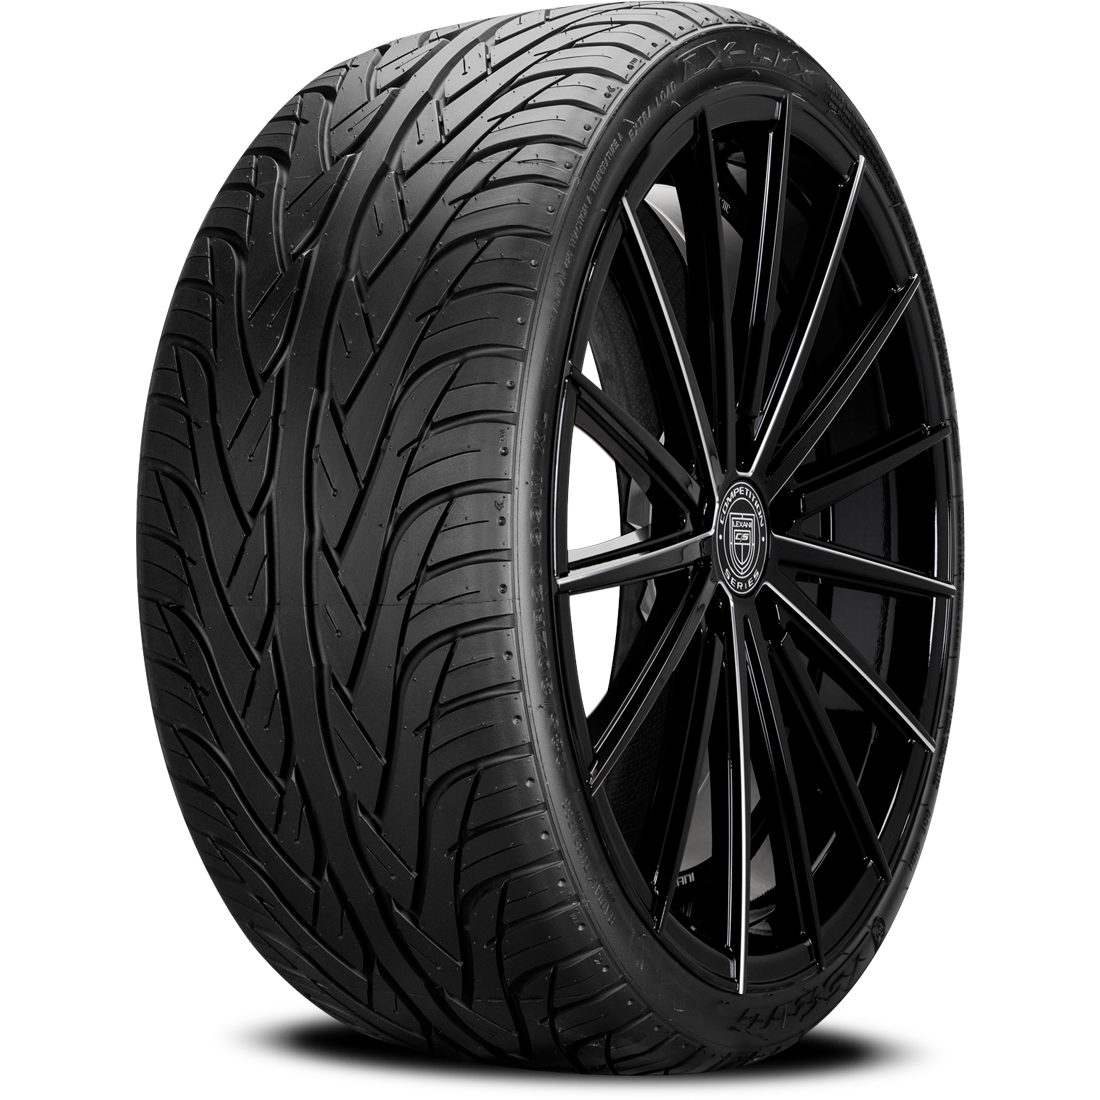 LEXANI LX-SIX II 275/30ZR20 (26.5X10.9R 20) Tires